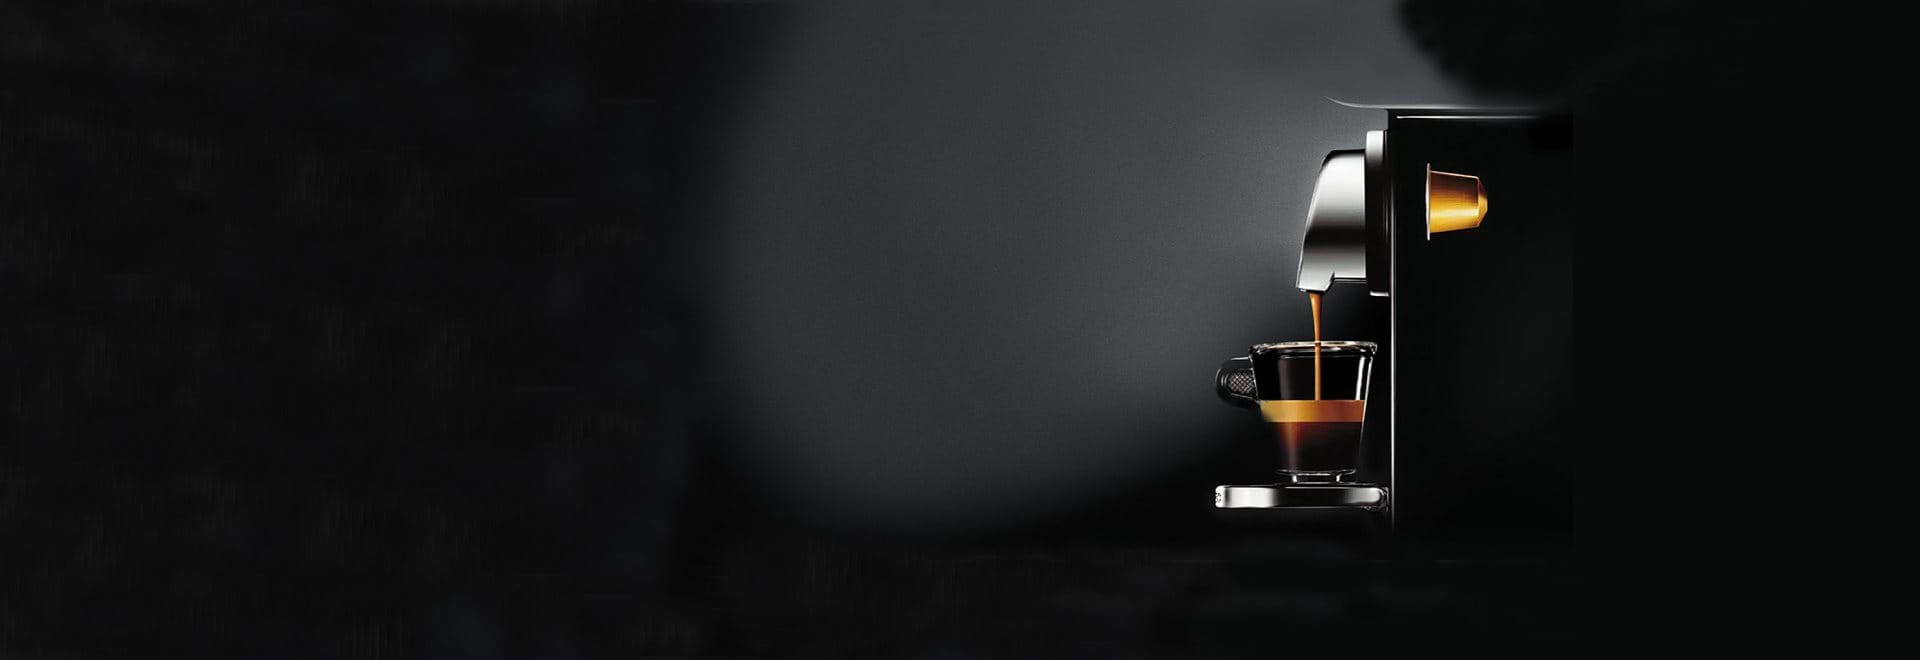 Rabatt på kaffamaskiner och kaffekapslar från Nespresso